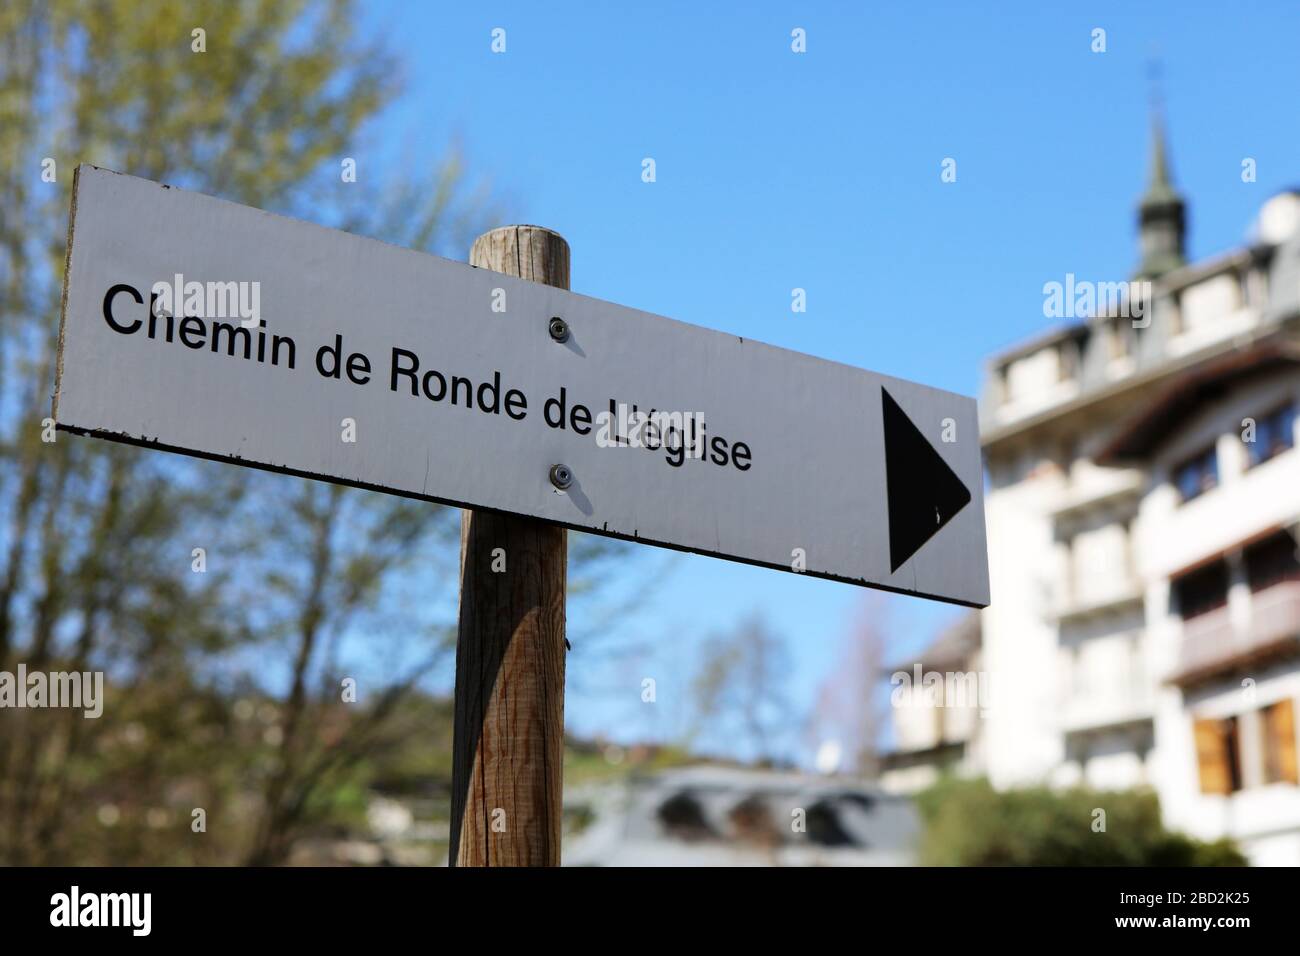 Chemin de Ronde de l'Eglise. Panneau. Saint-Gervais-les-Bains. Haute-Savoie. France. Stock Photo